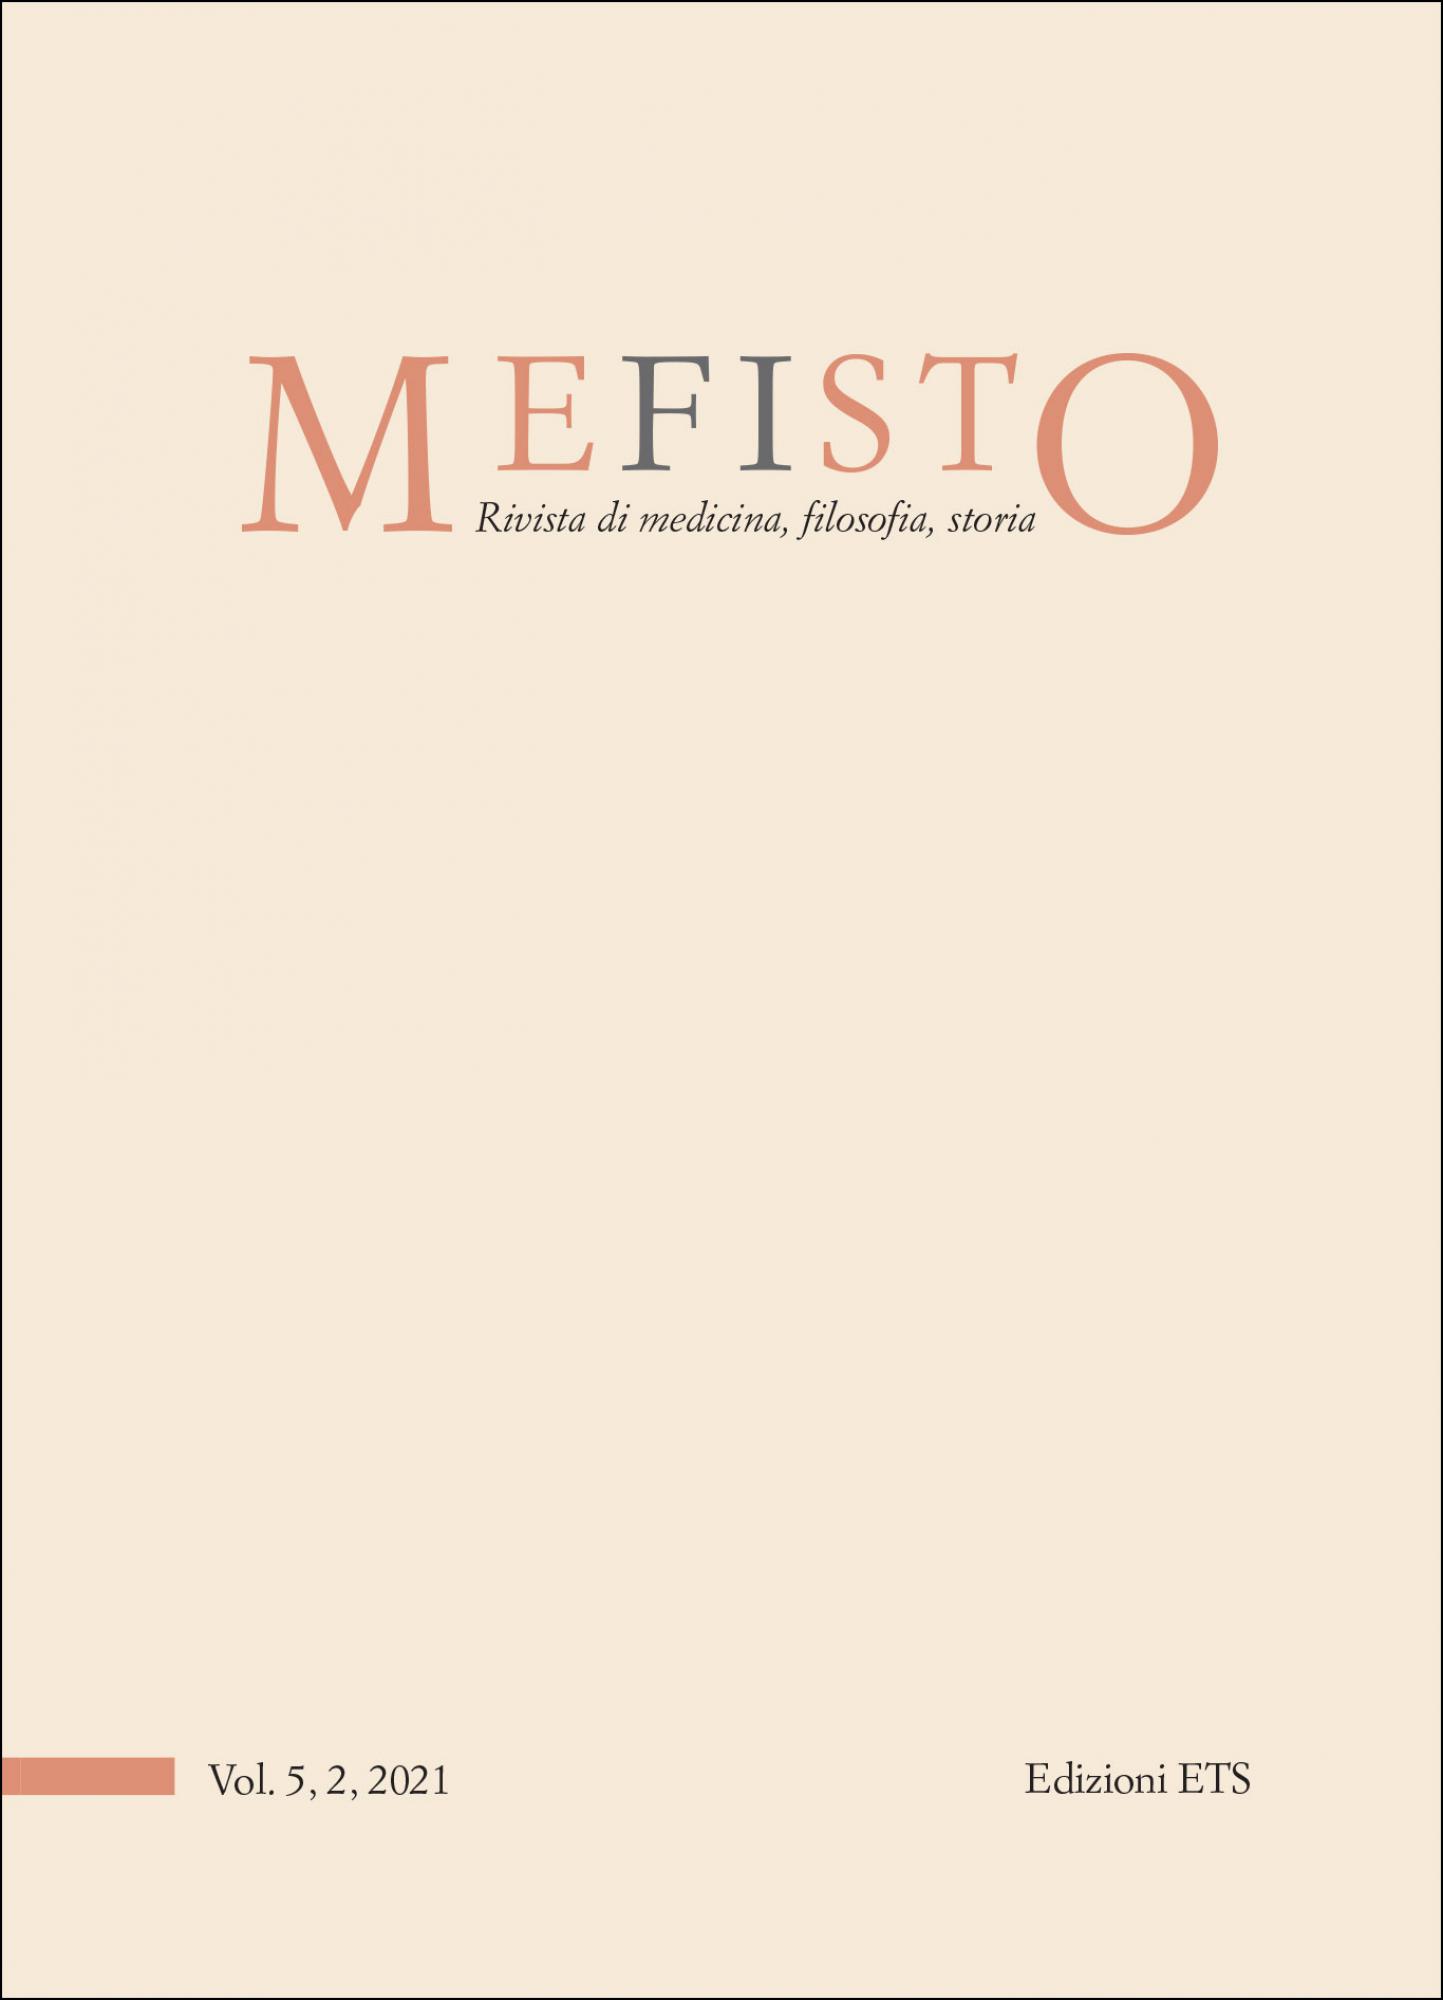 Mefisto, Rivista di medicina, filosofia, storia.Vol. 5,2,2021